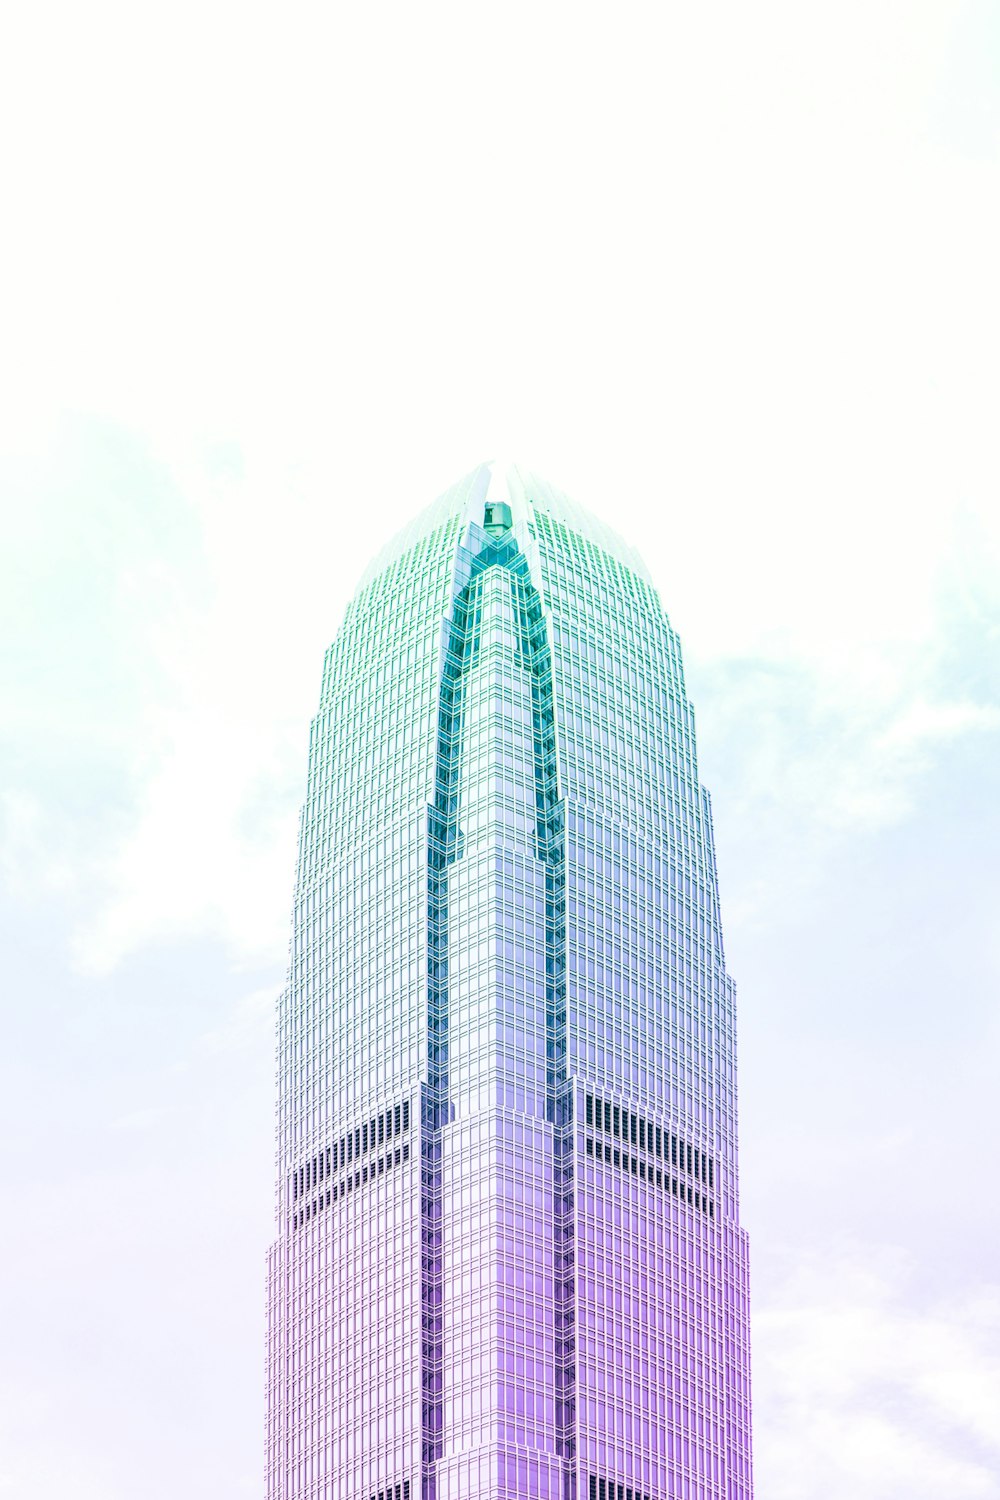 ティールとピンクの高層ビルのローアングル写真